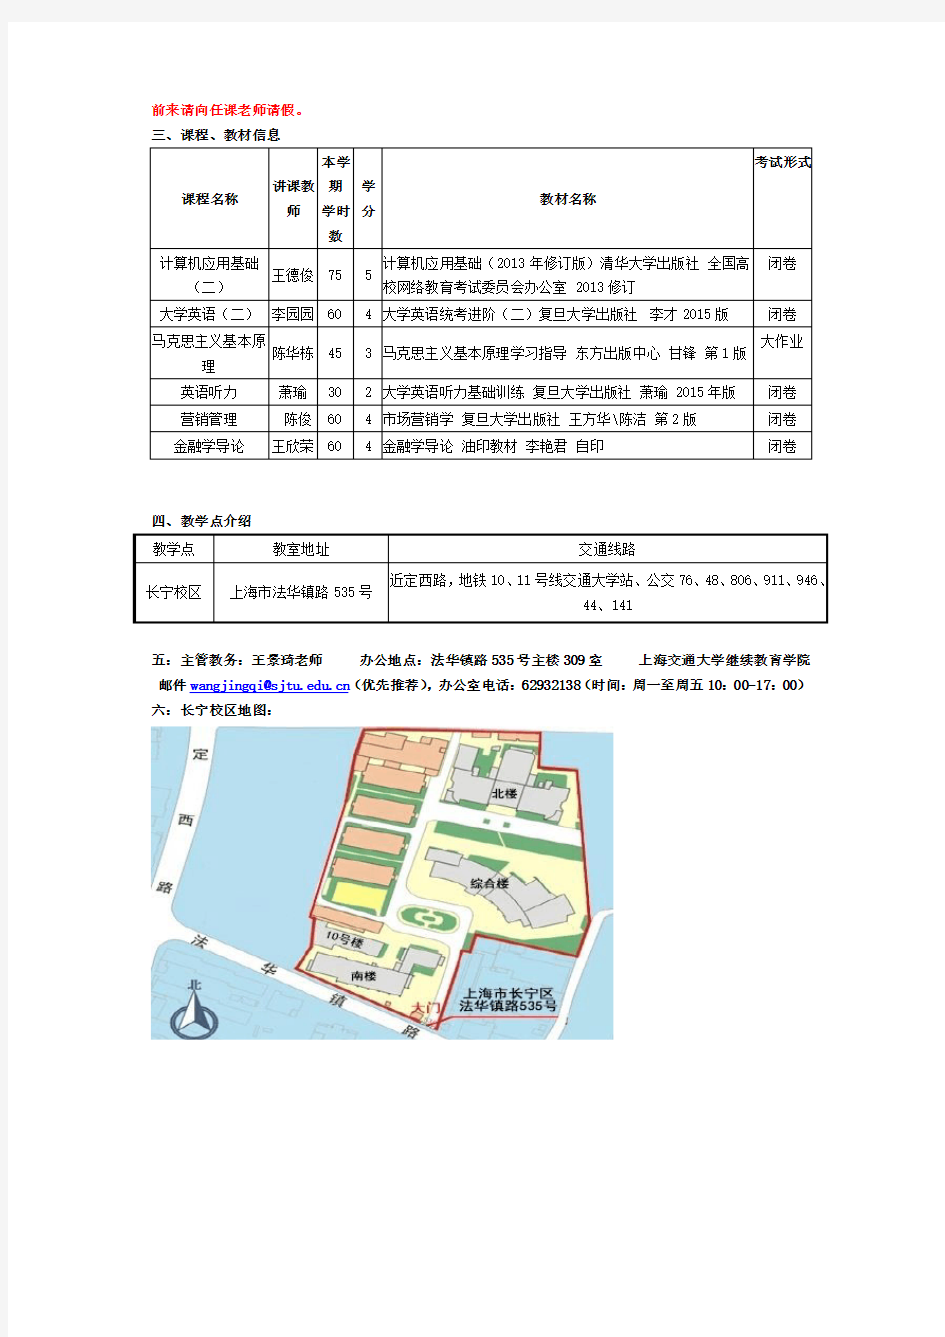 上海交通大学继续教育学院(网络教育)上课时间表